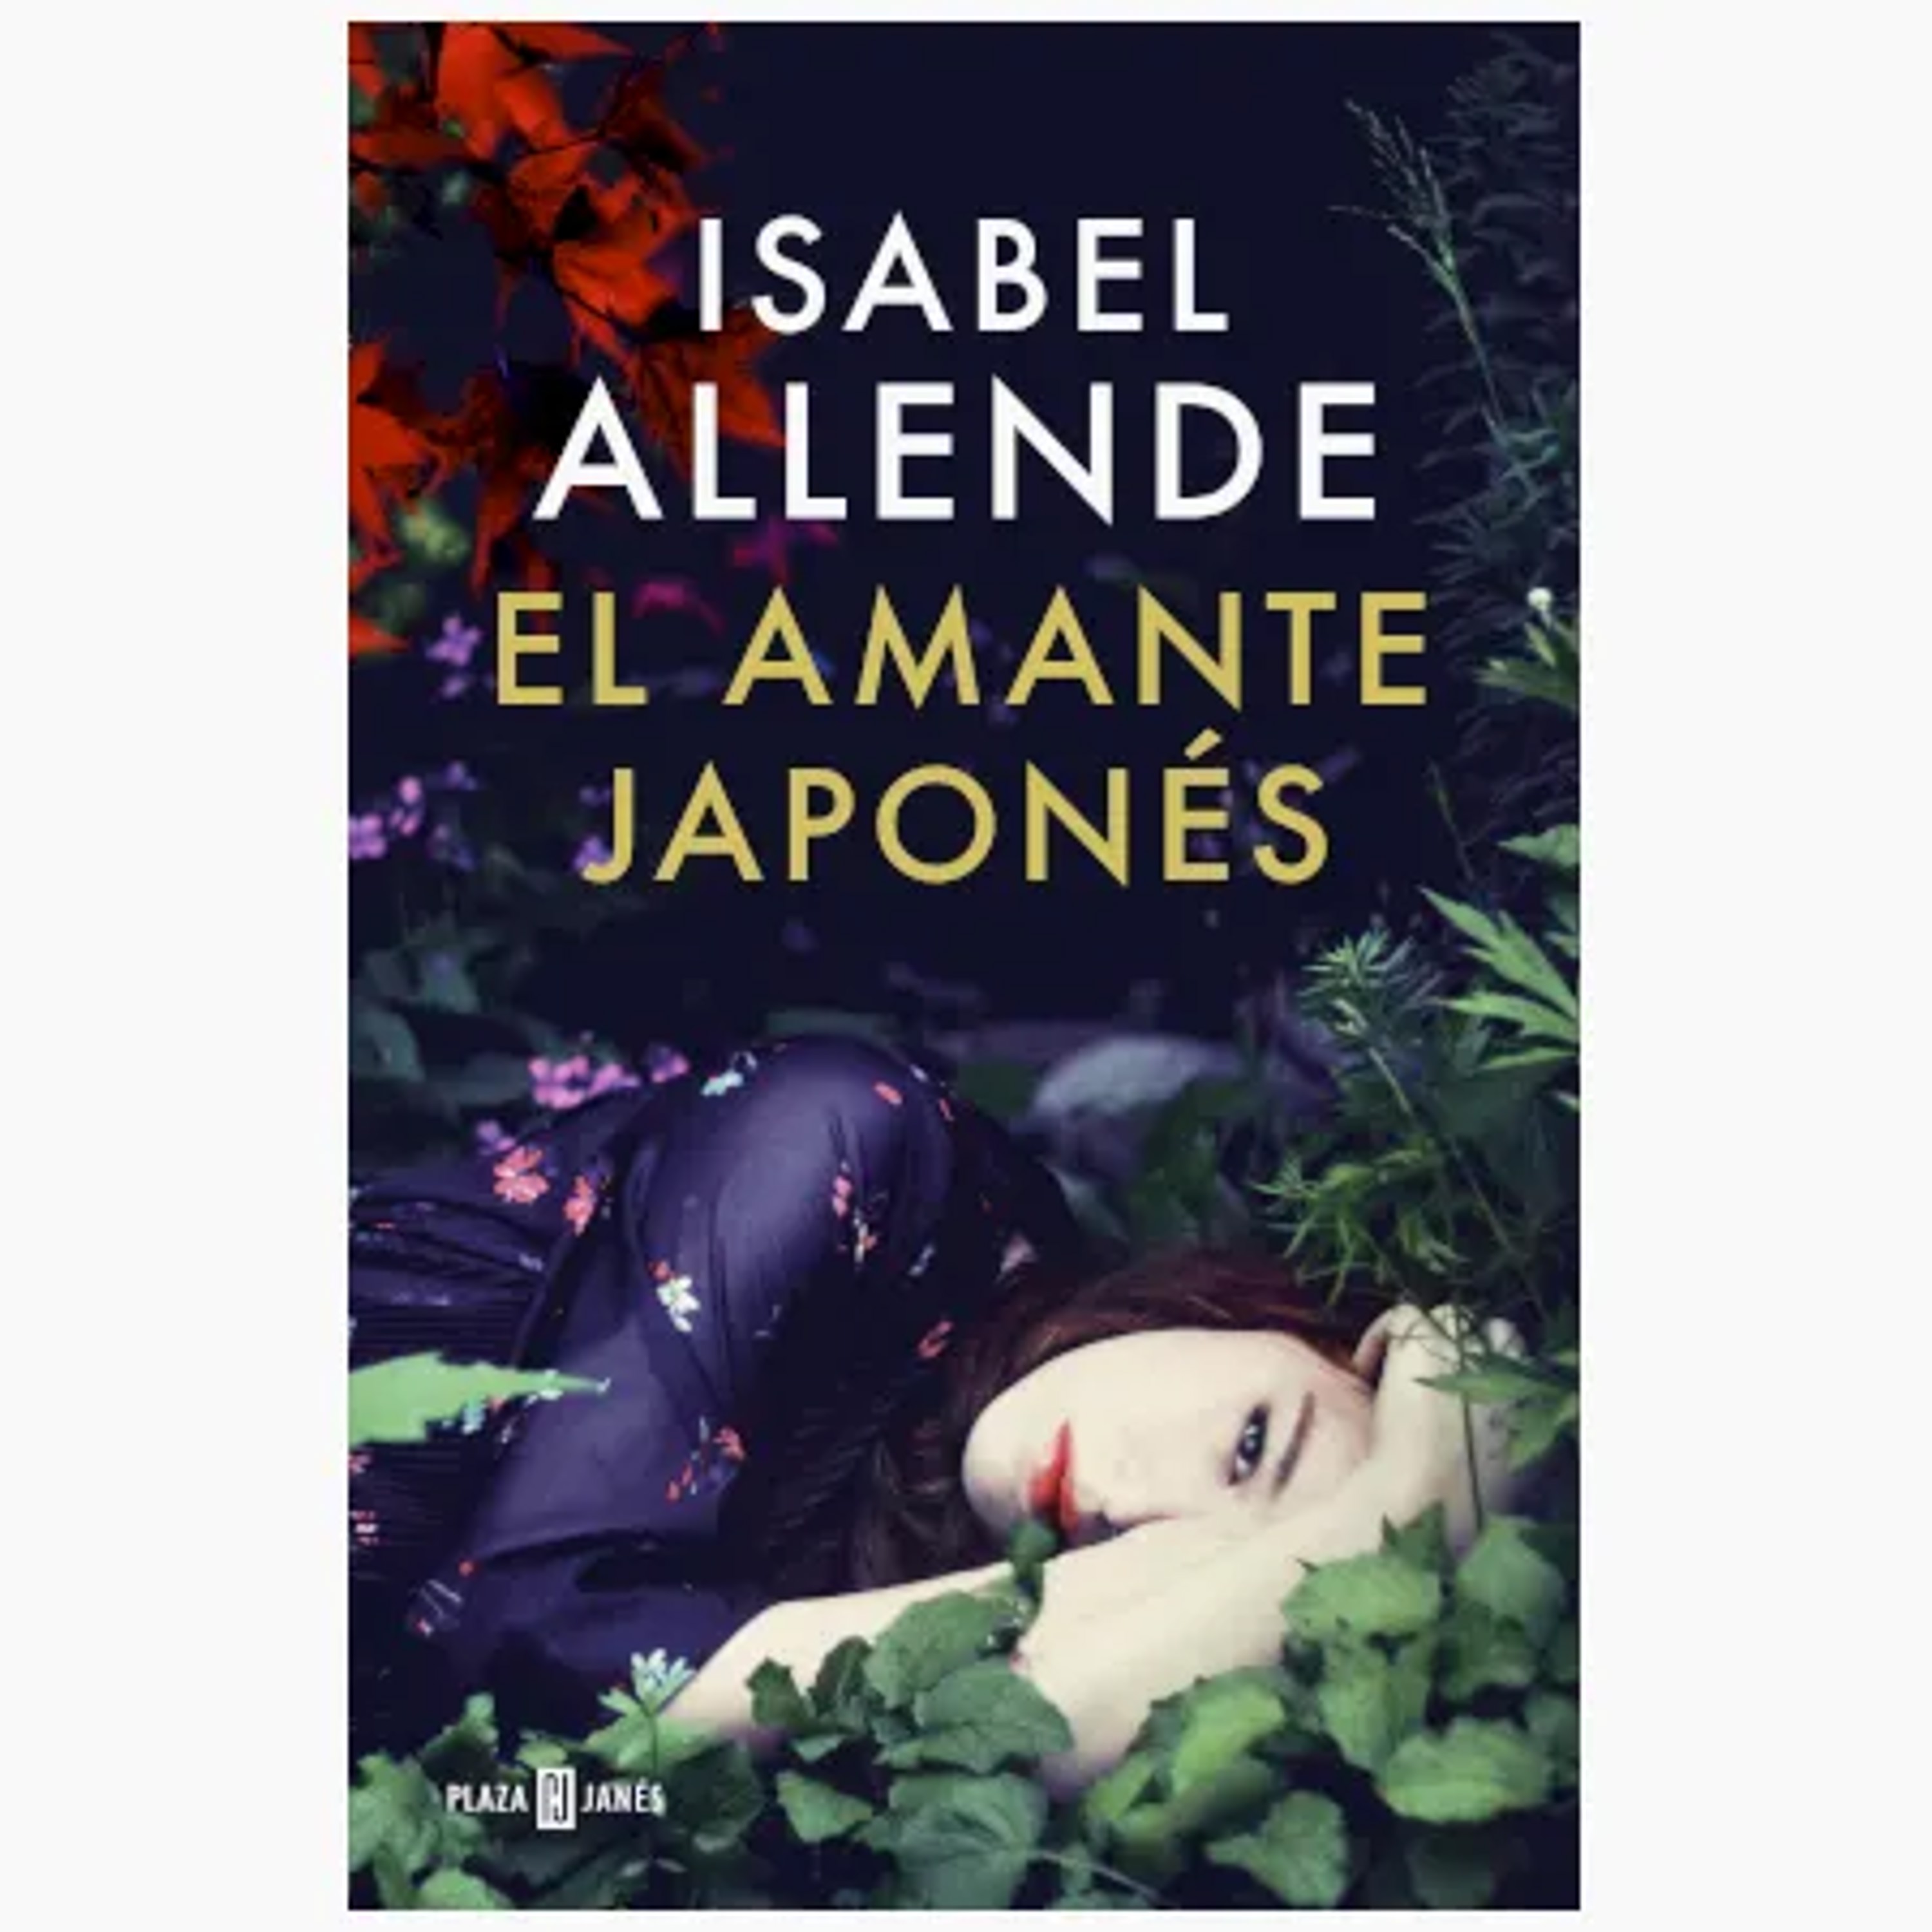 Resumen del libro El amante japonés de Isabel Allende